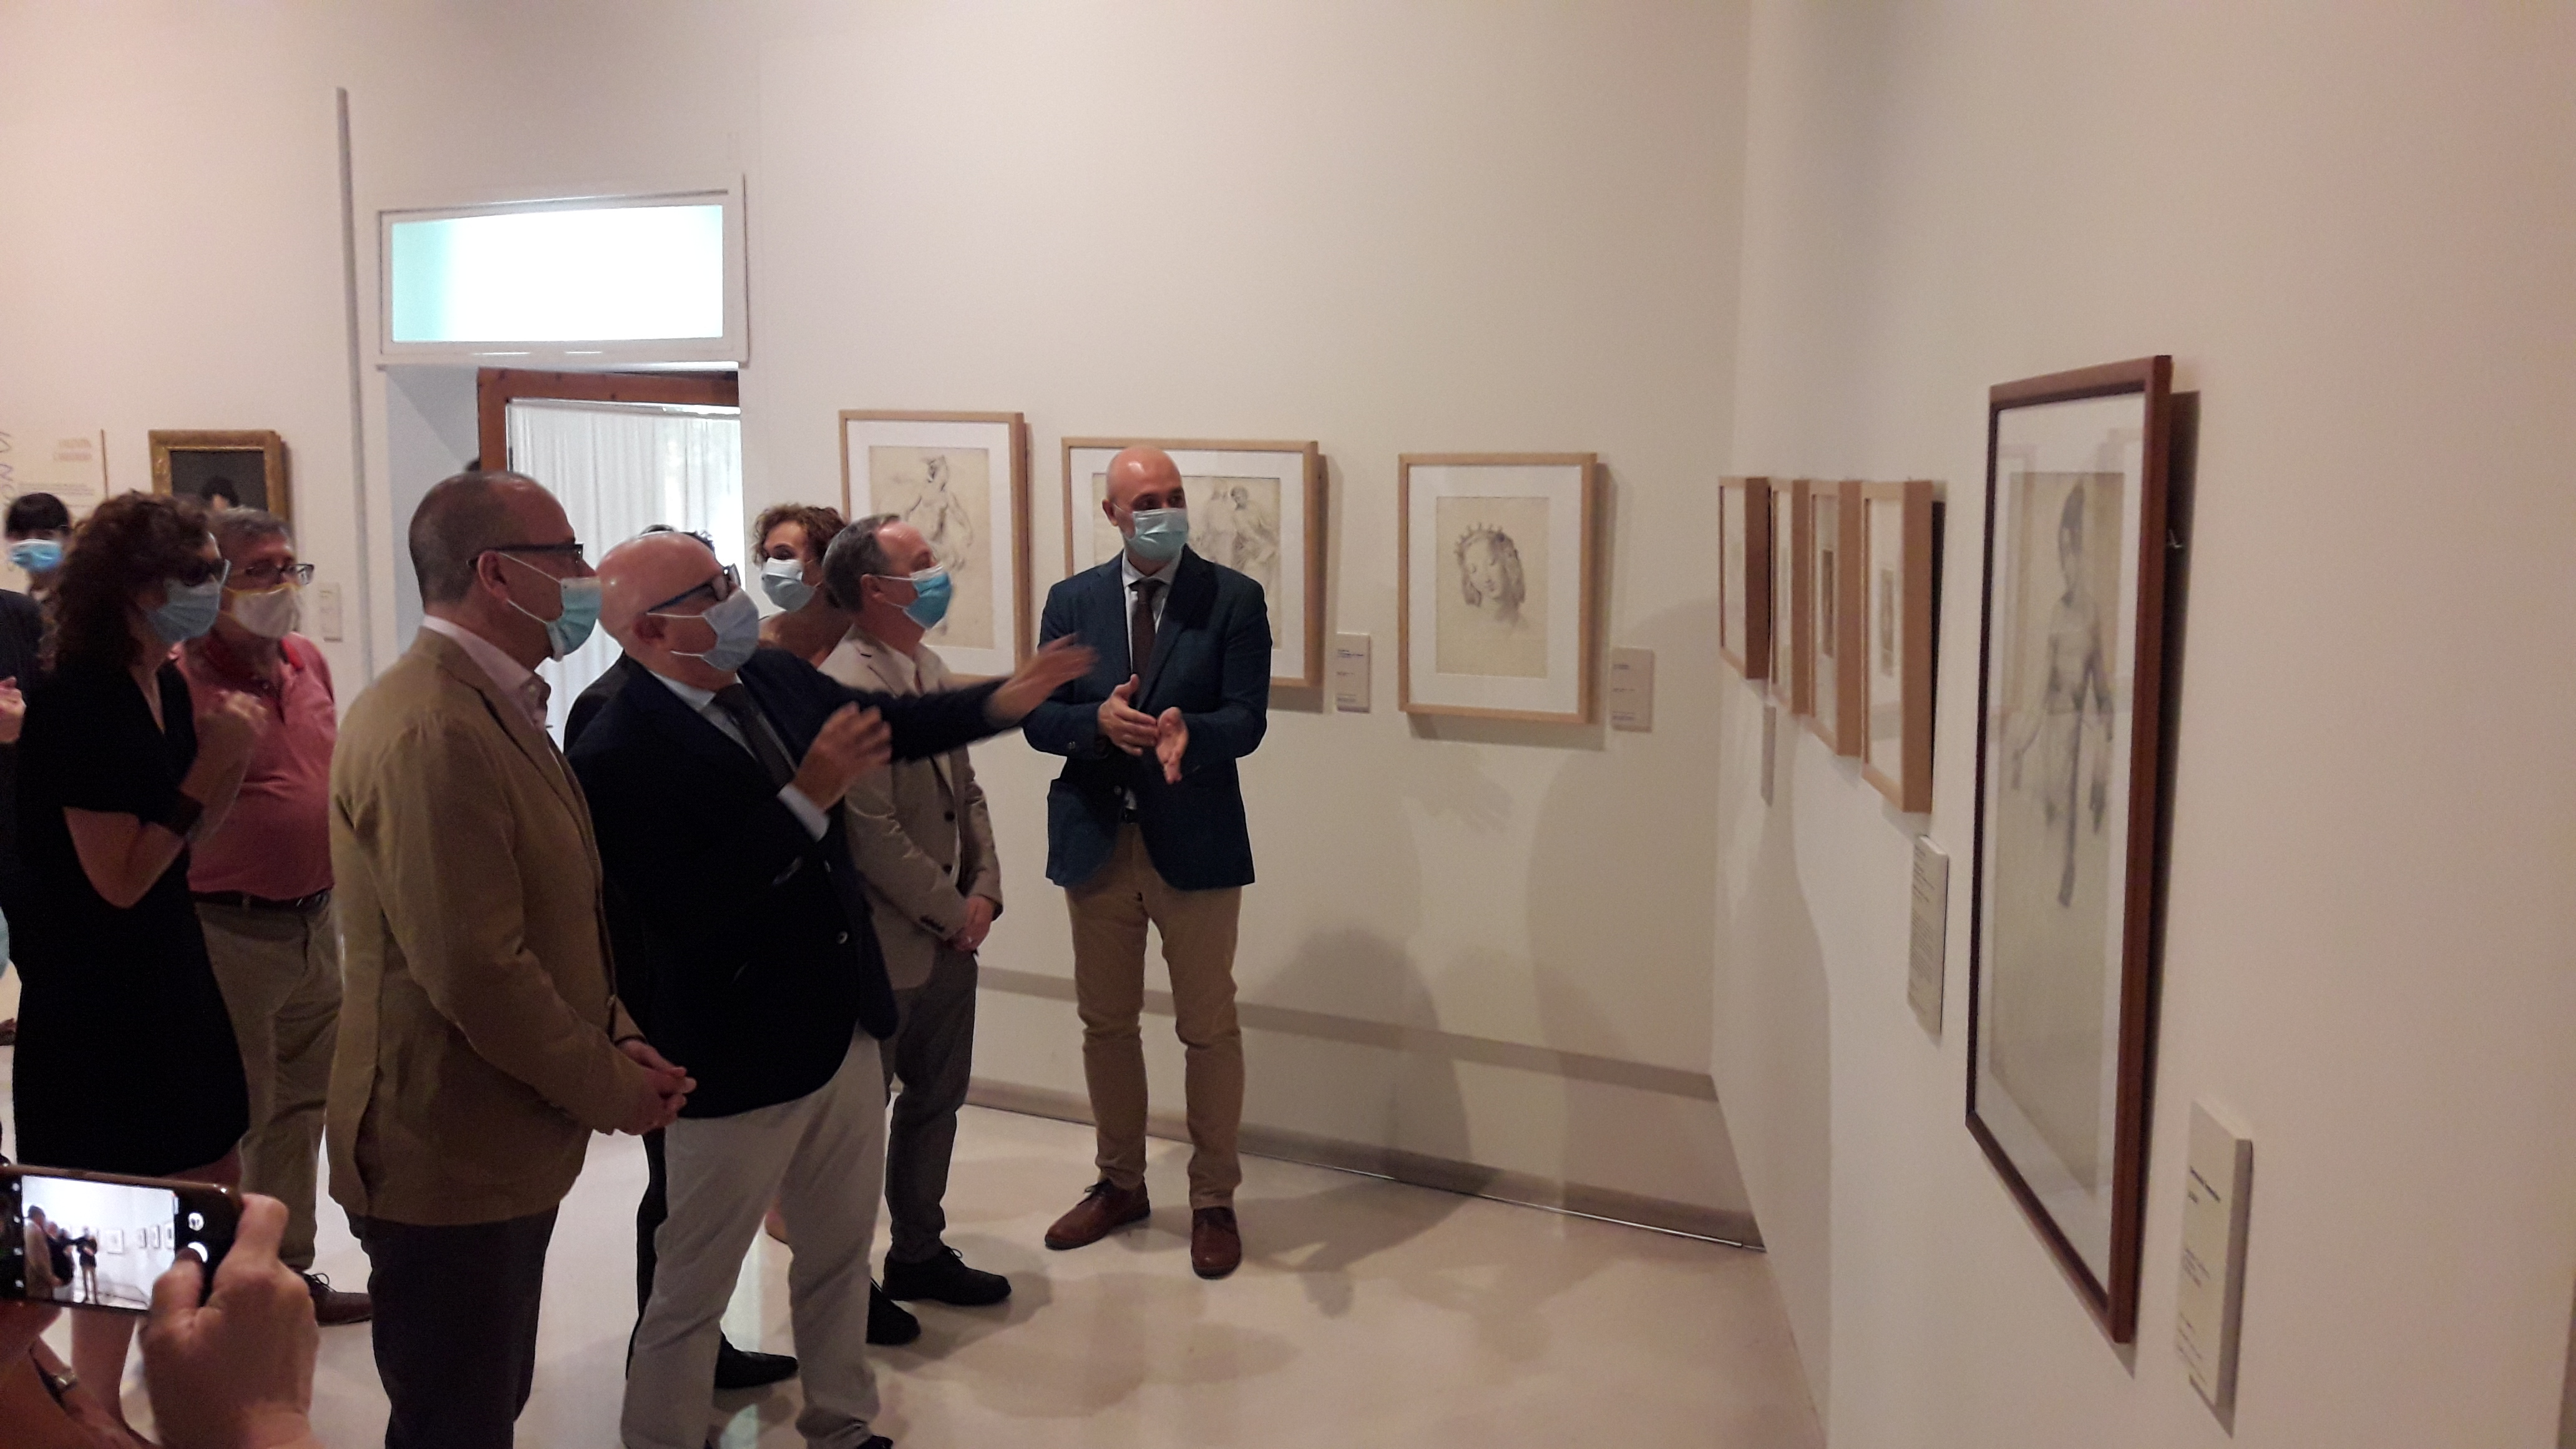 Presentación de la Guía del Museo de Huesca, acuarelas de Valentín Carderera y renovación expositiva, 29 de junio de 2020